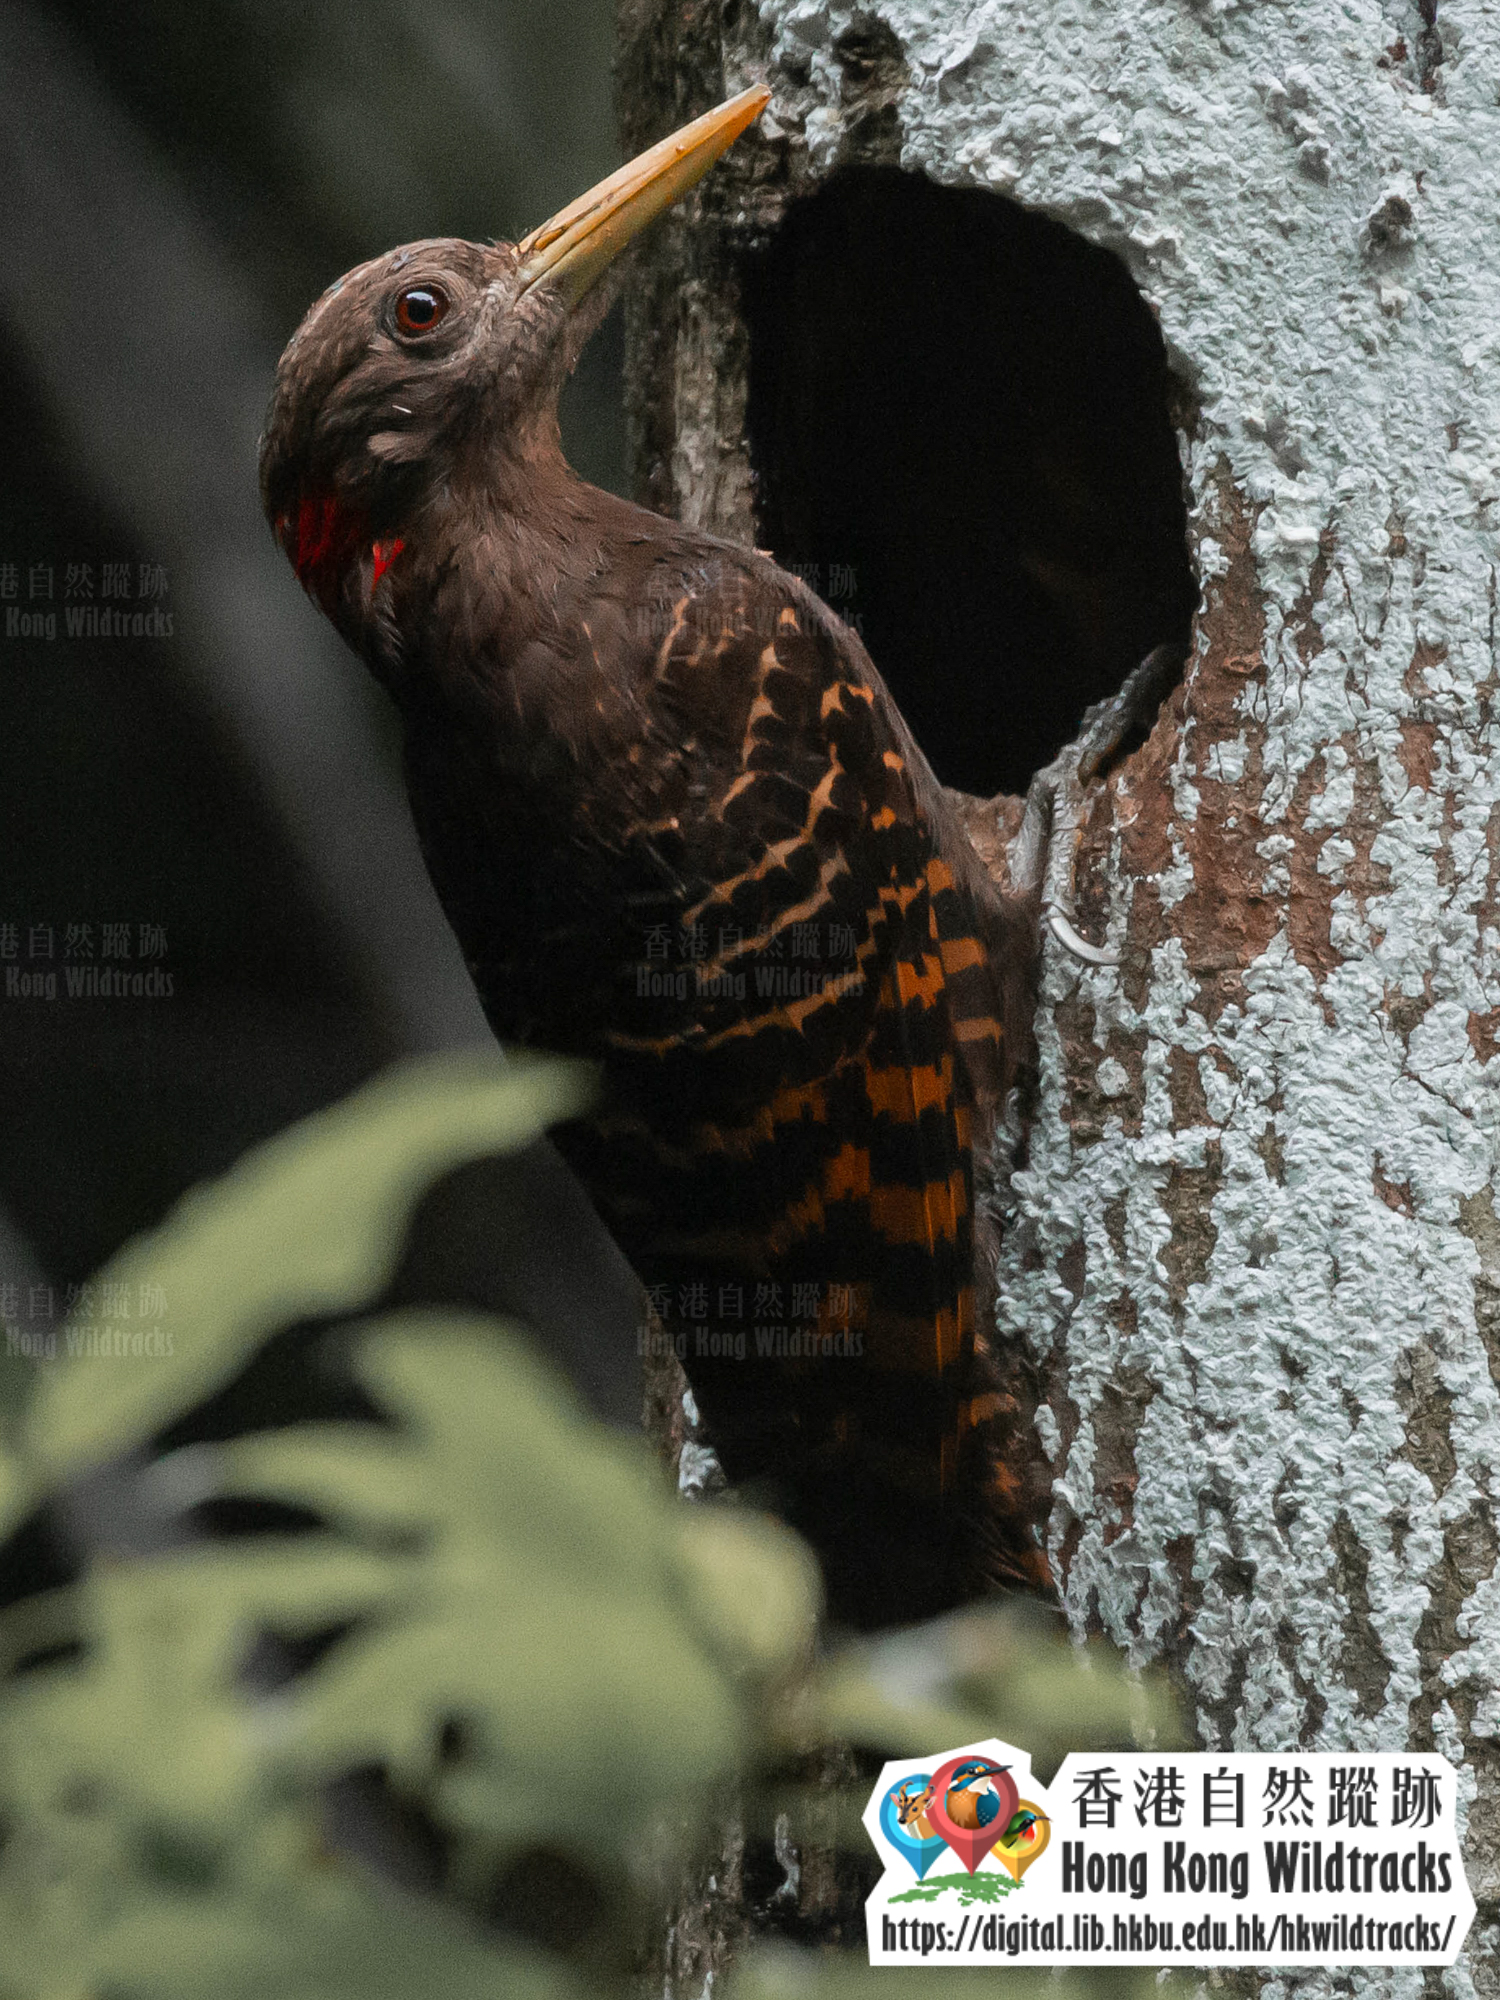 黃嘴栗啄木鳥 相片提供： Kwok Tsz Ki